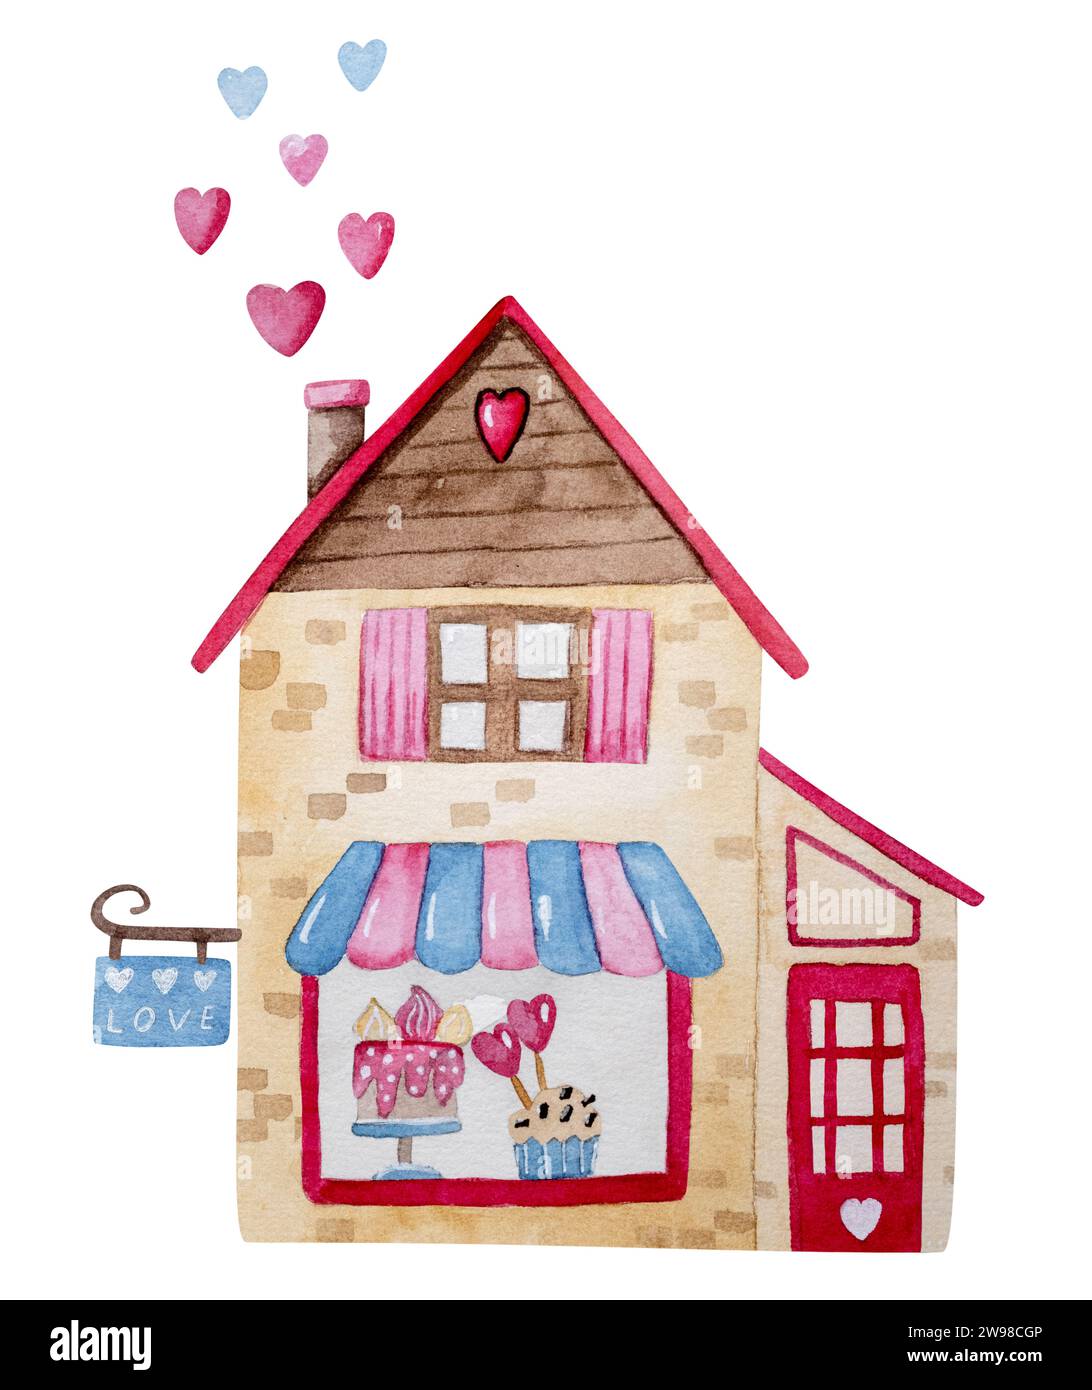 Clipart dell'illustrazione acquerello disegnato a mano a tema per il 14 febbraio, con Un negozio di caramelle con torte, torte e caramelle per San Valentino Foto Stock